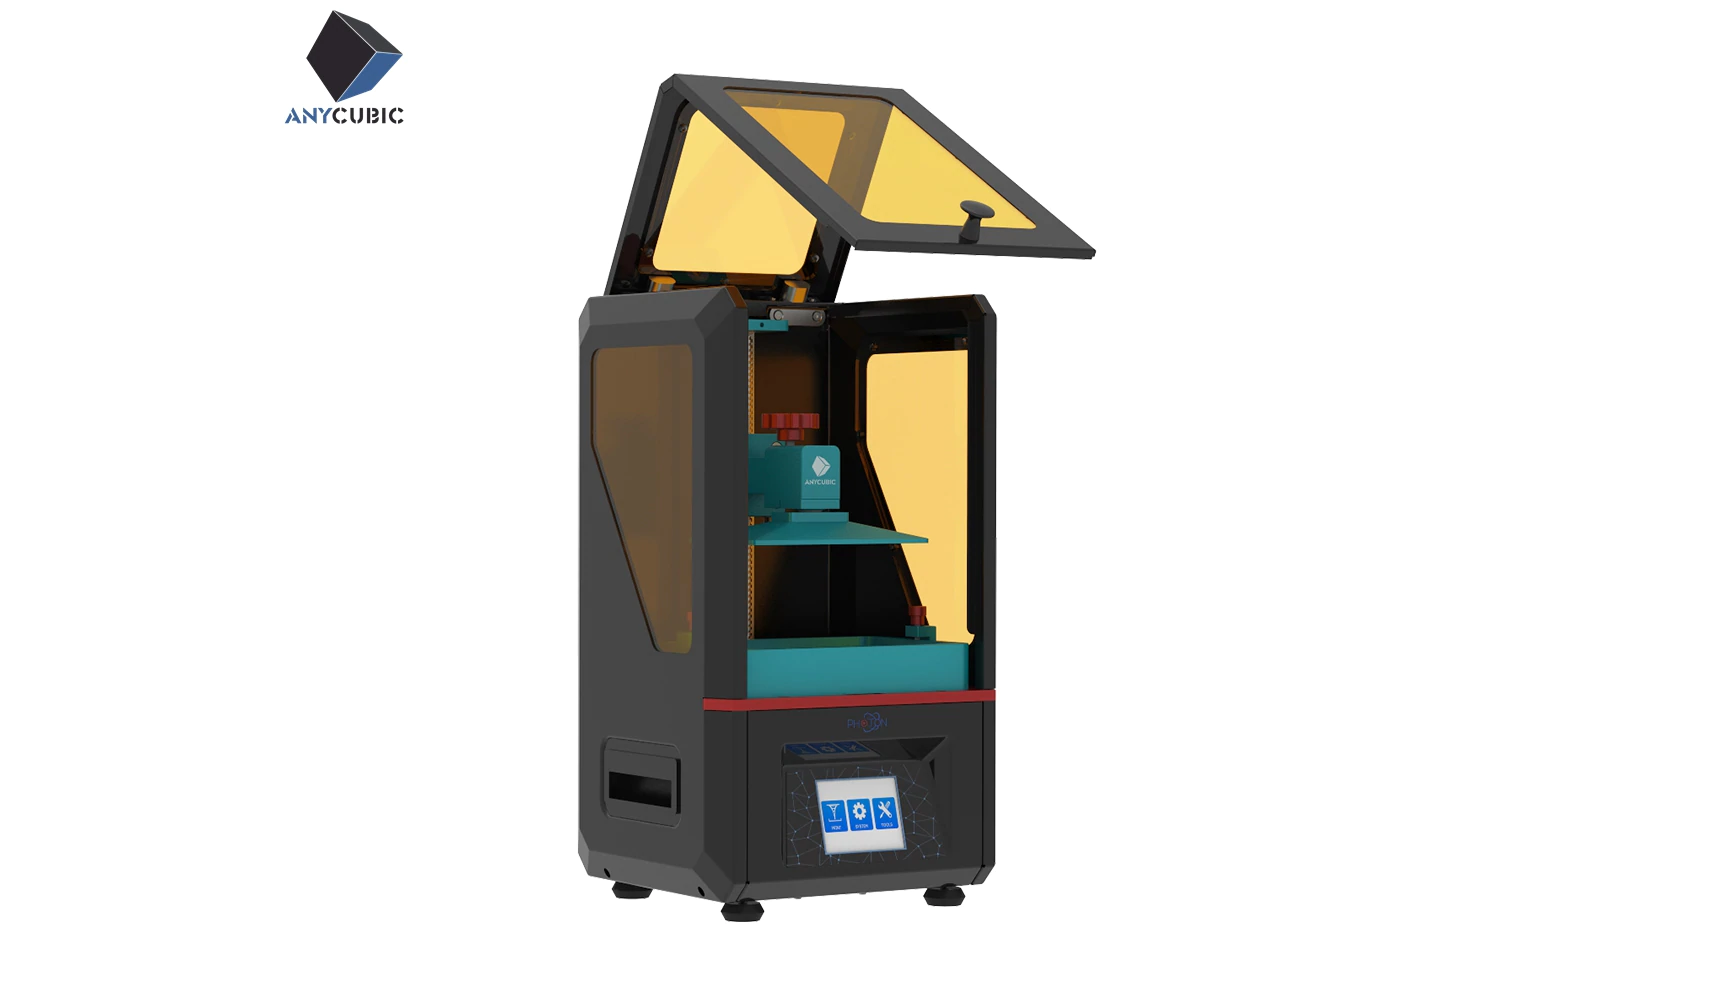 Недорогие и доступные фотополимерные 3D-принтеры - 13